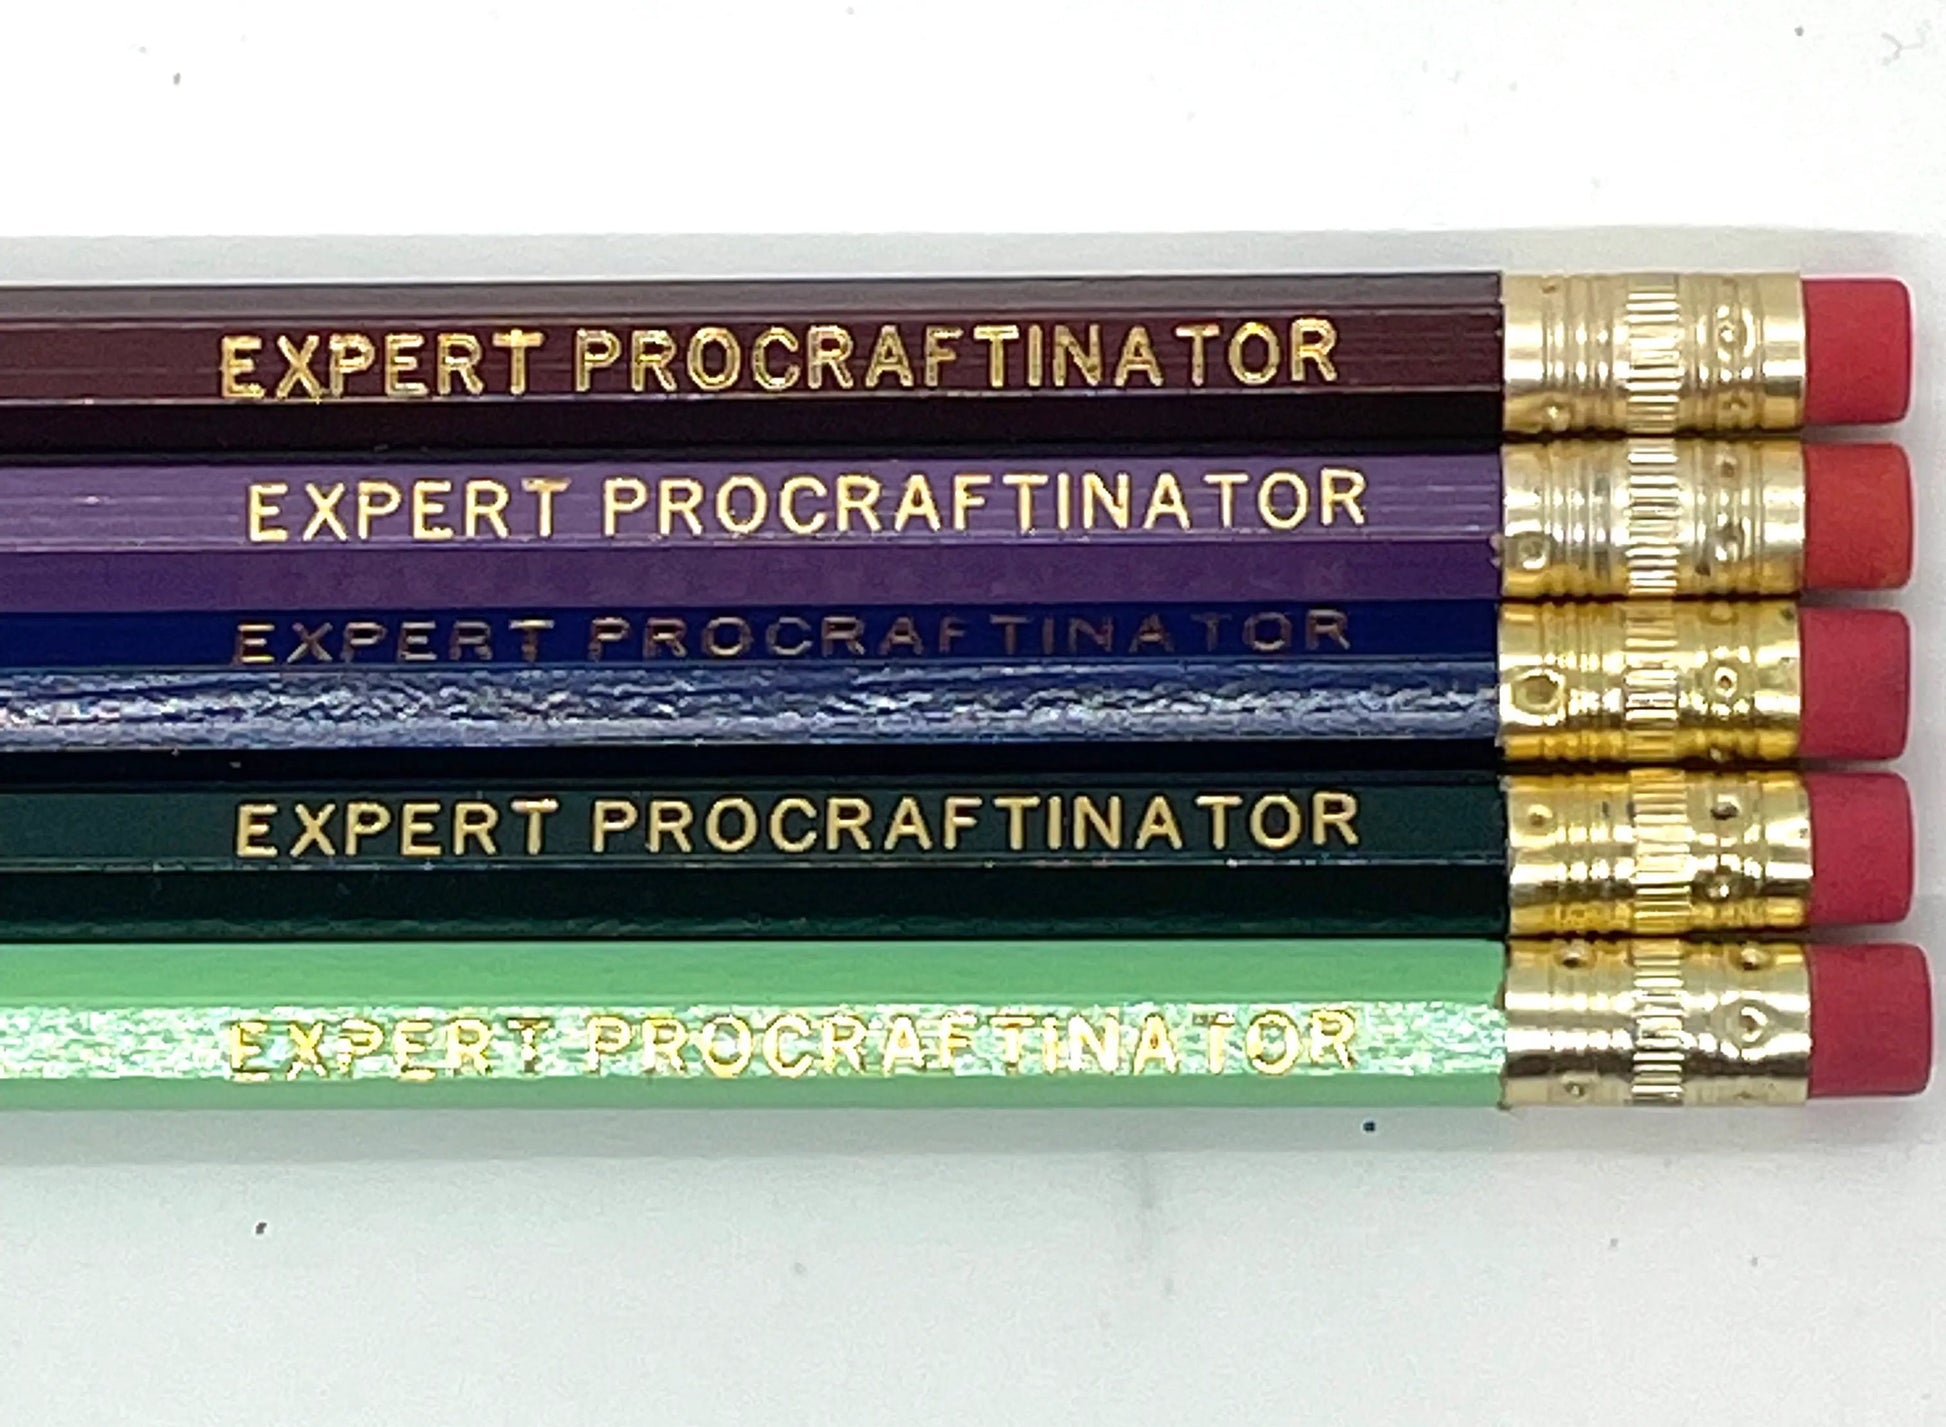 Crafty Pencils - expert procraftinator at Wabi Sabi